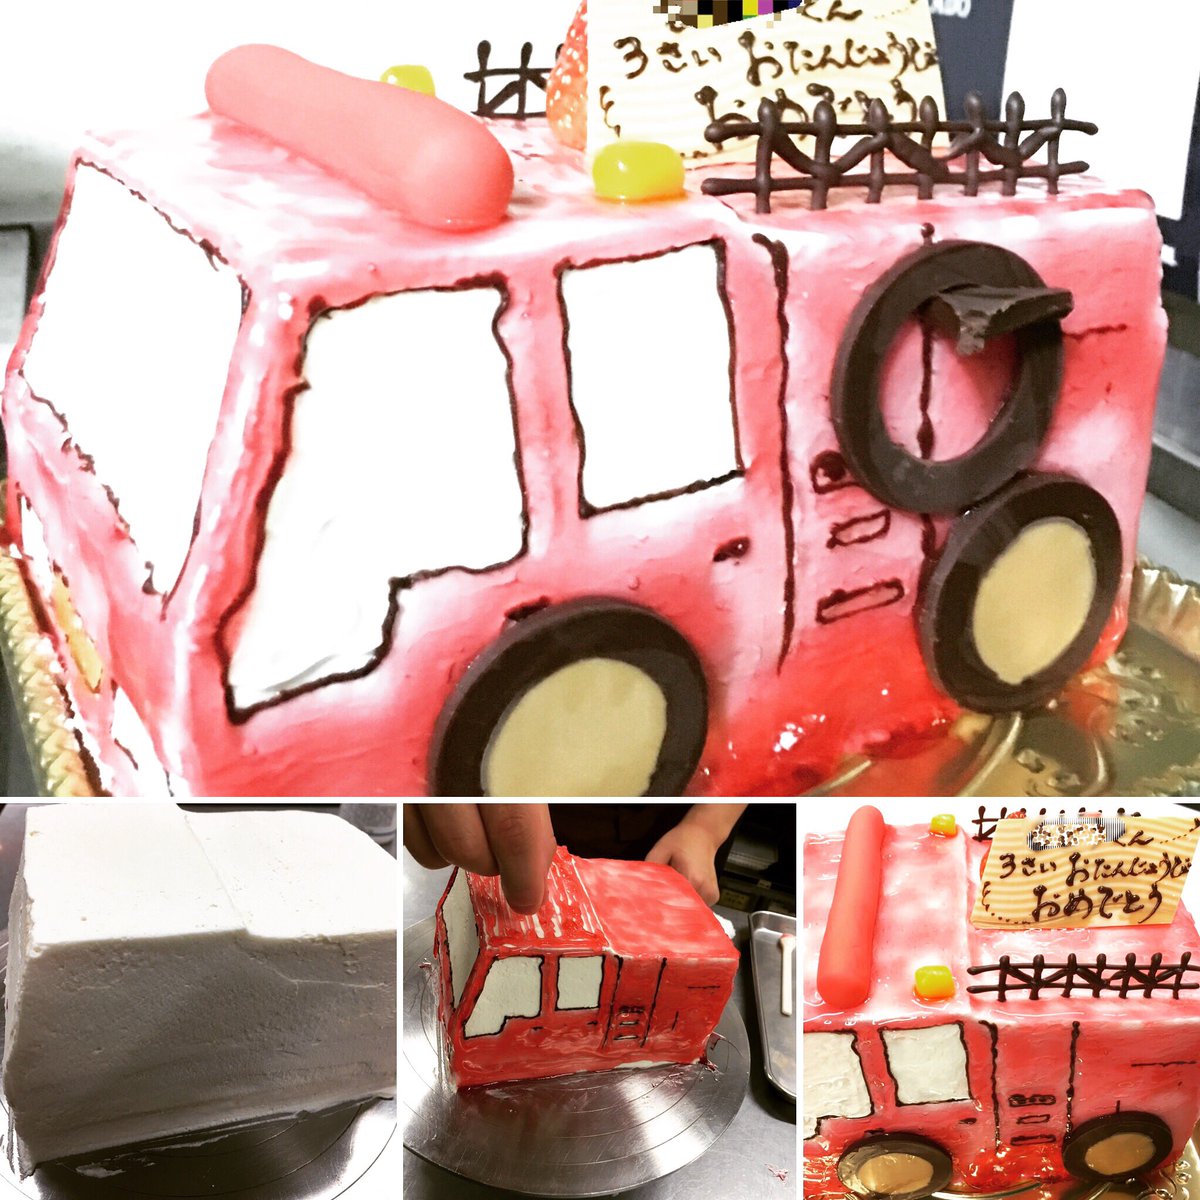 菓子処shokado Fujioka Twitterren 消防車のケーキ 3歳の男の子のリクエストで消防車のケーキを作りました 世のために働くかっこいい消防士さんになるのかな 中は苺サンドの ショートケーキです 消防車 Shokado バースデーケーキ 立体ケーキ